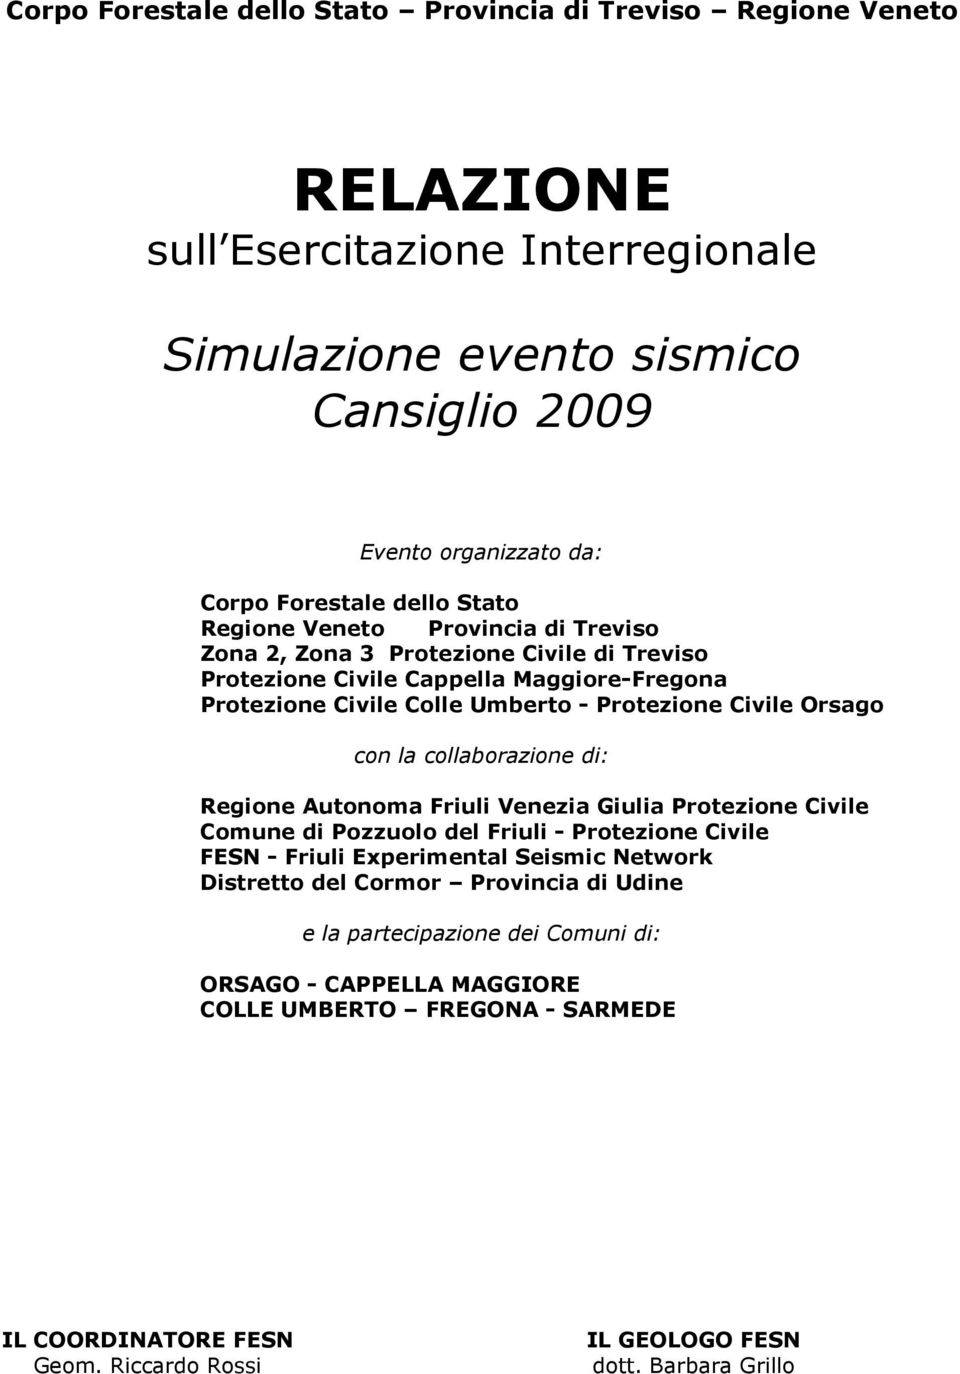 Orsago con la collaborazione di: Regione Autonoma Friuli Venezia Giulia Protezione Civile Comune di Pozzuolo del Friuli - Protezione Civile FESN - Friuli Experimental Seismic Network Distretto